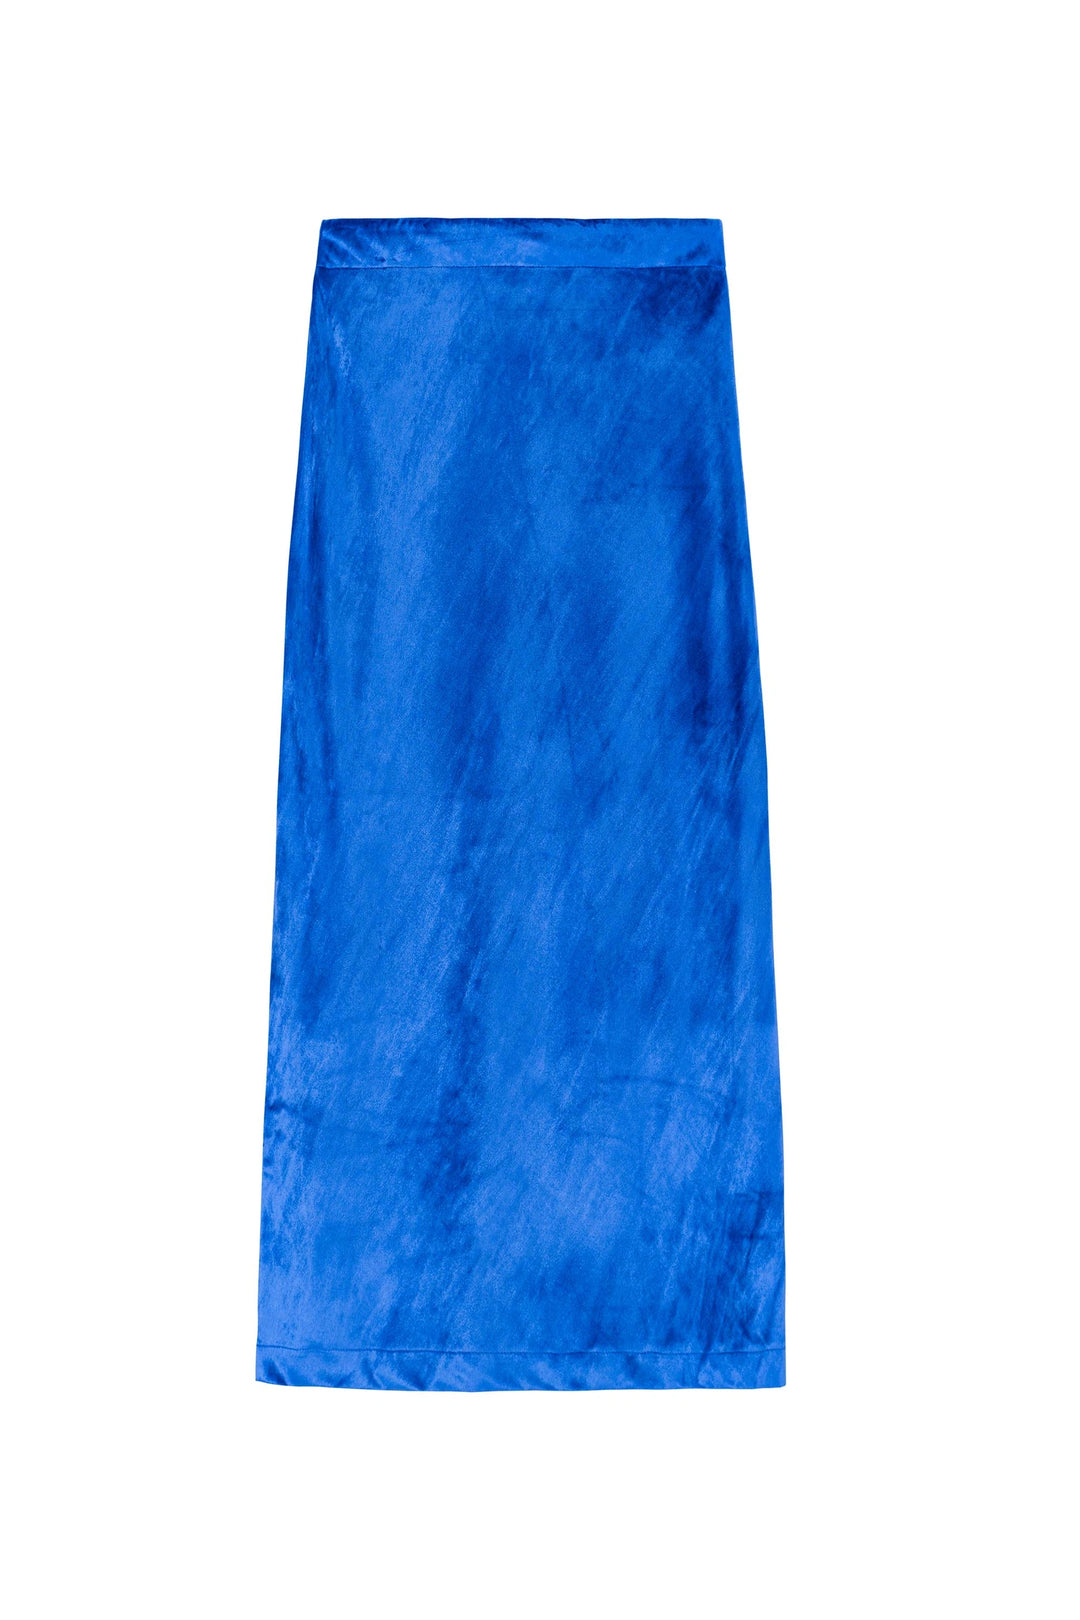 Kettlewell Velvet Skirt - Royal Blue (Sp/Wi)